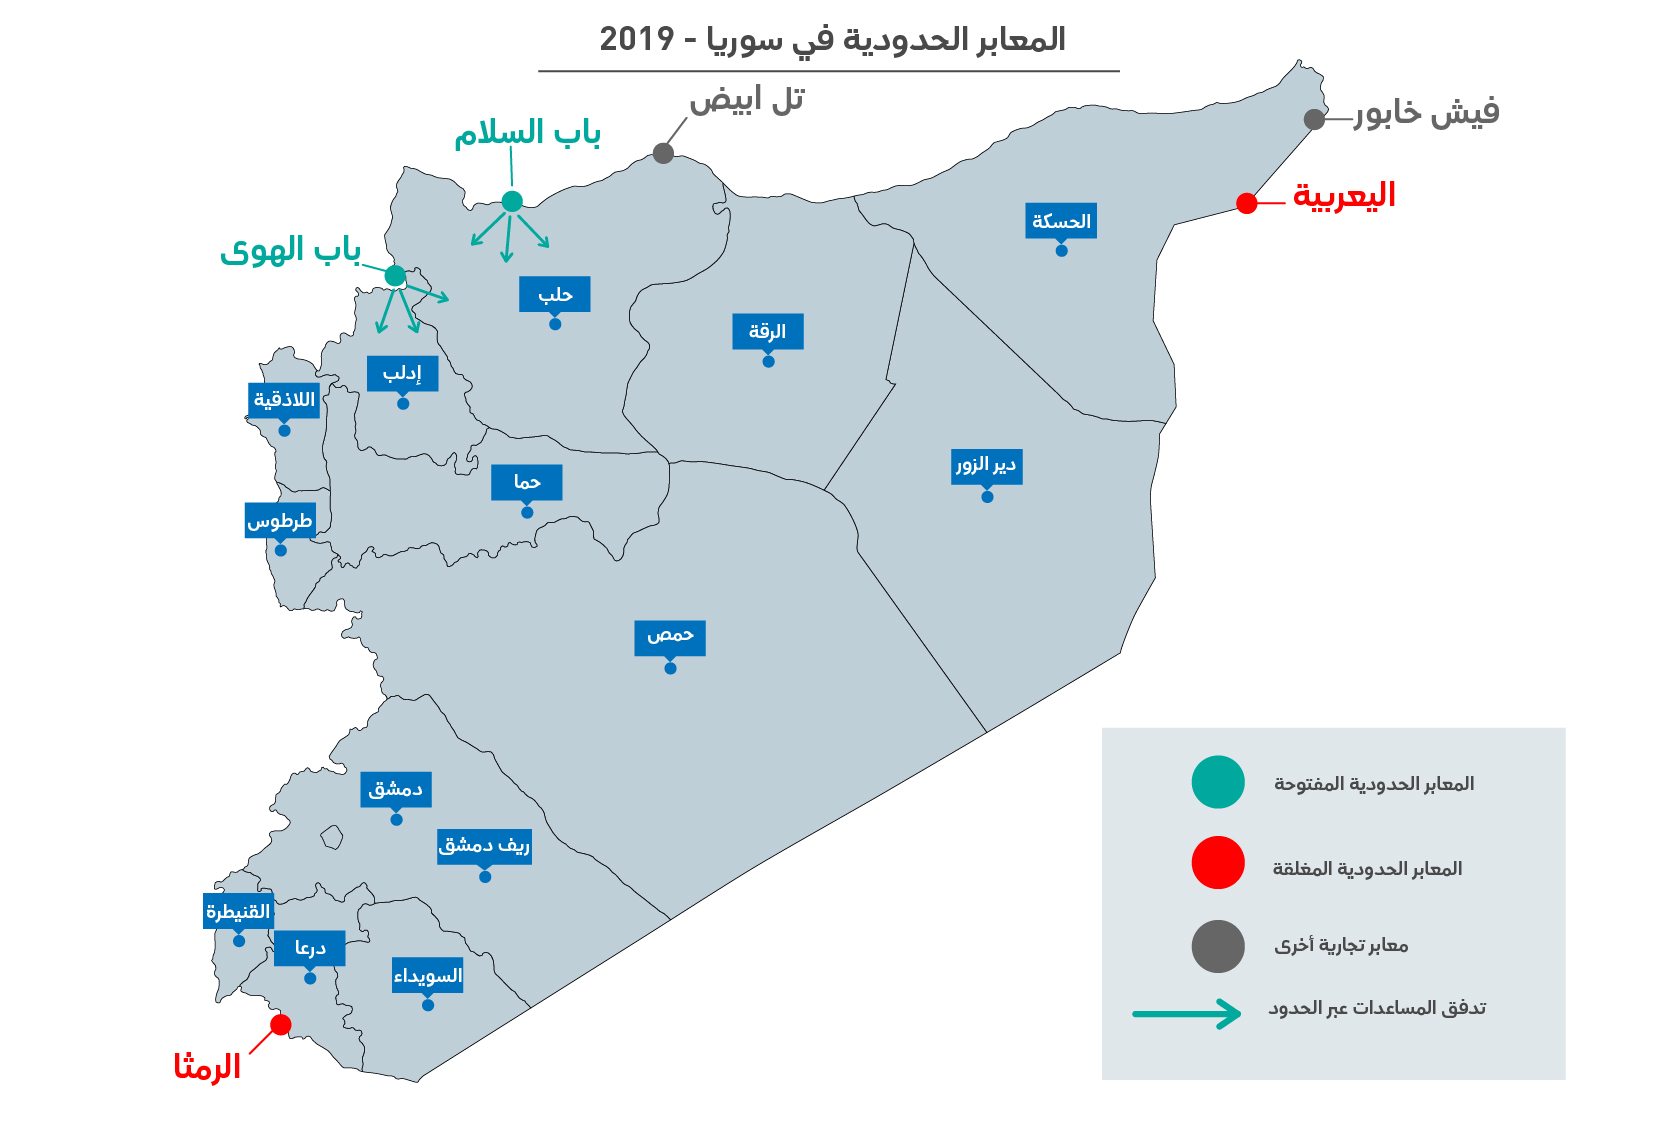 قرار مجلس الأمن الذي يقضي بعبور المساعدات عبر الحدود إلى سوريا 2019